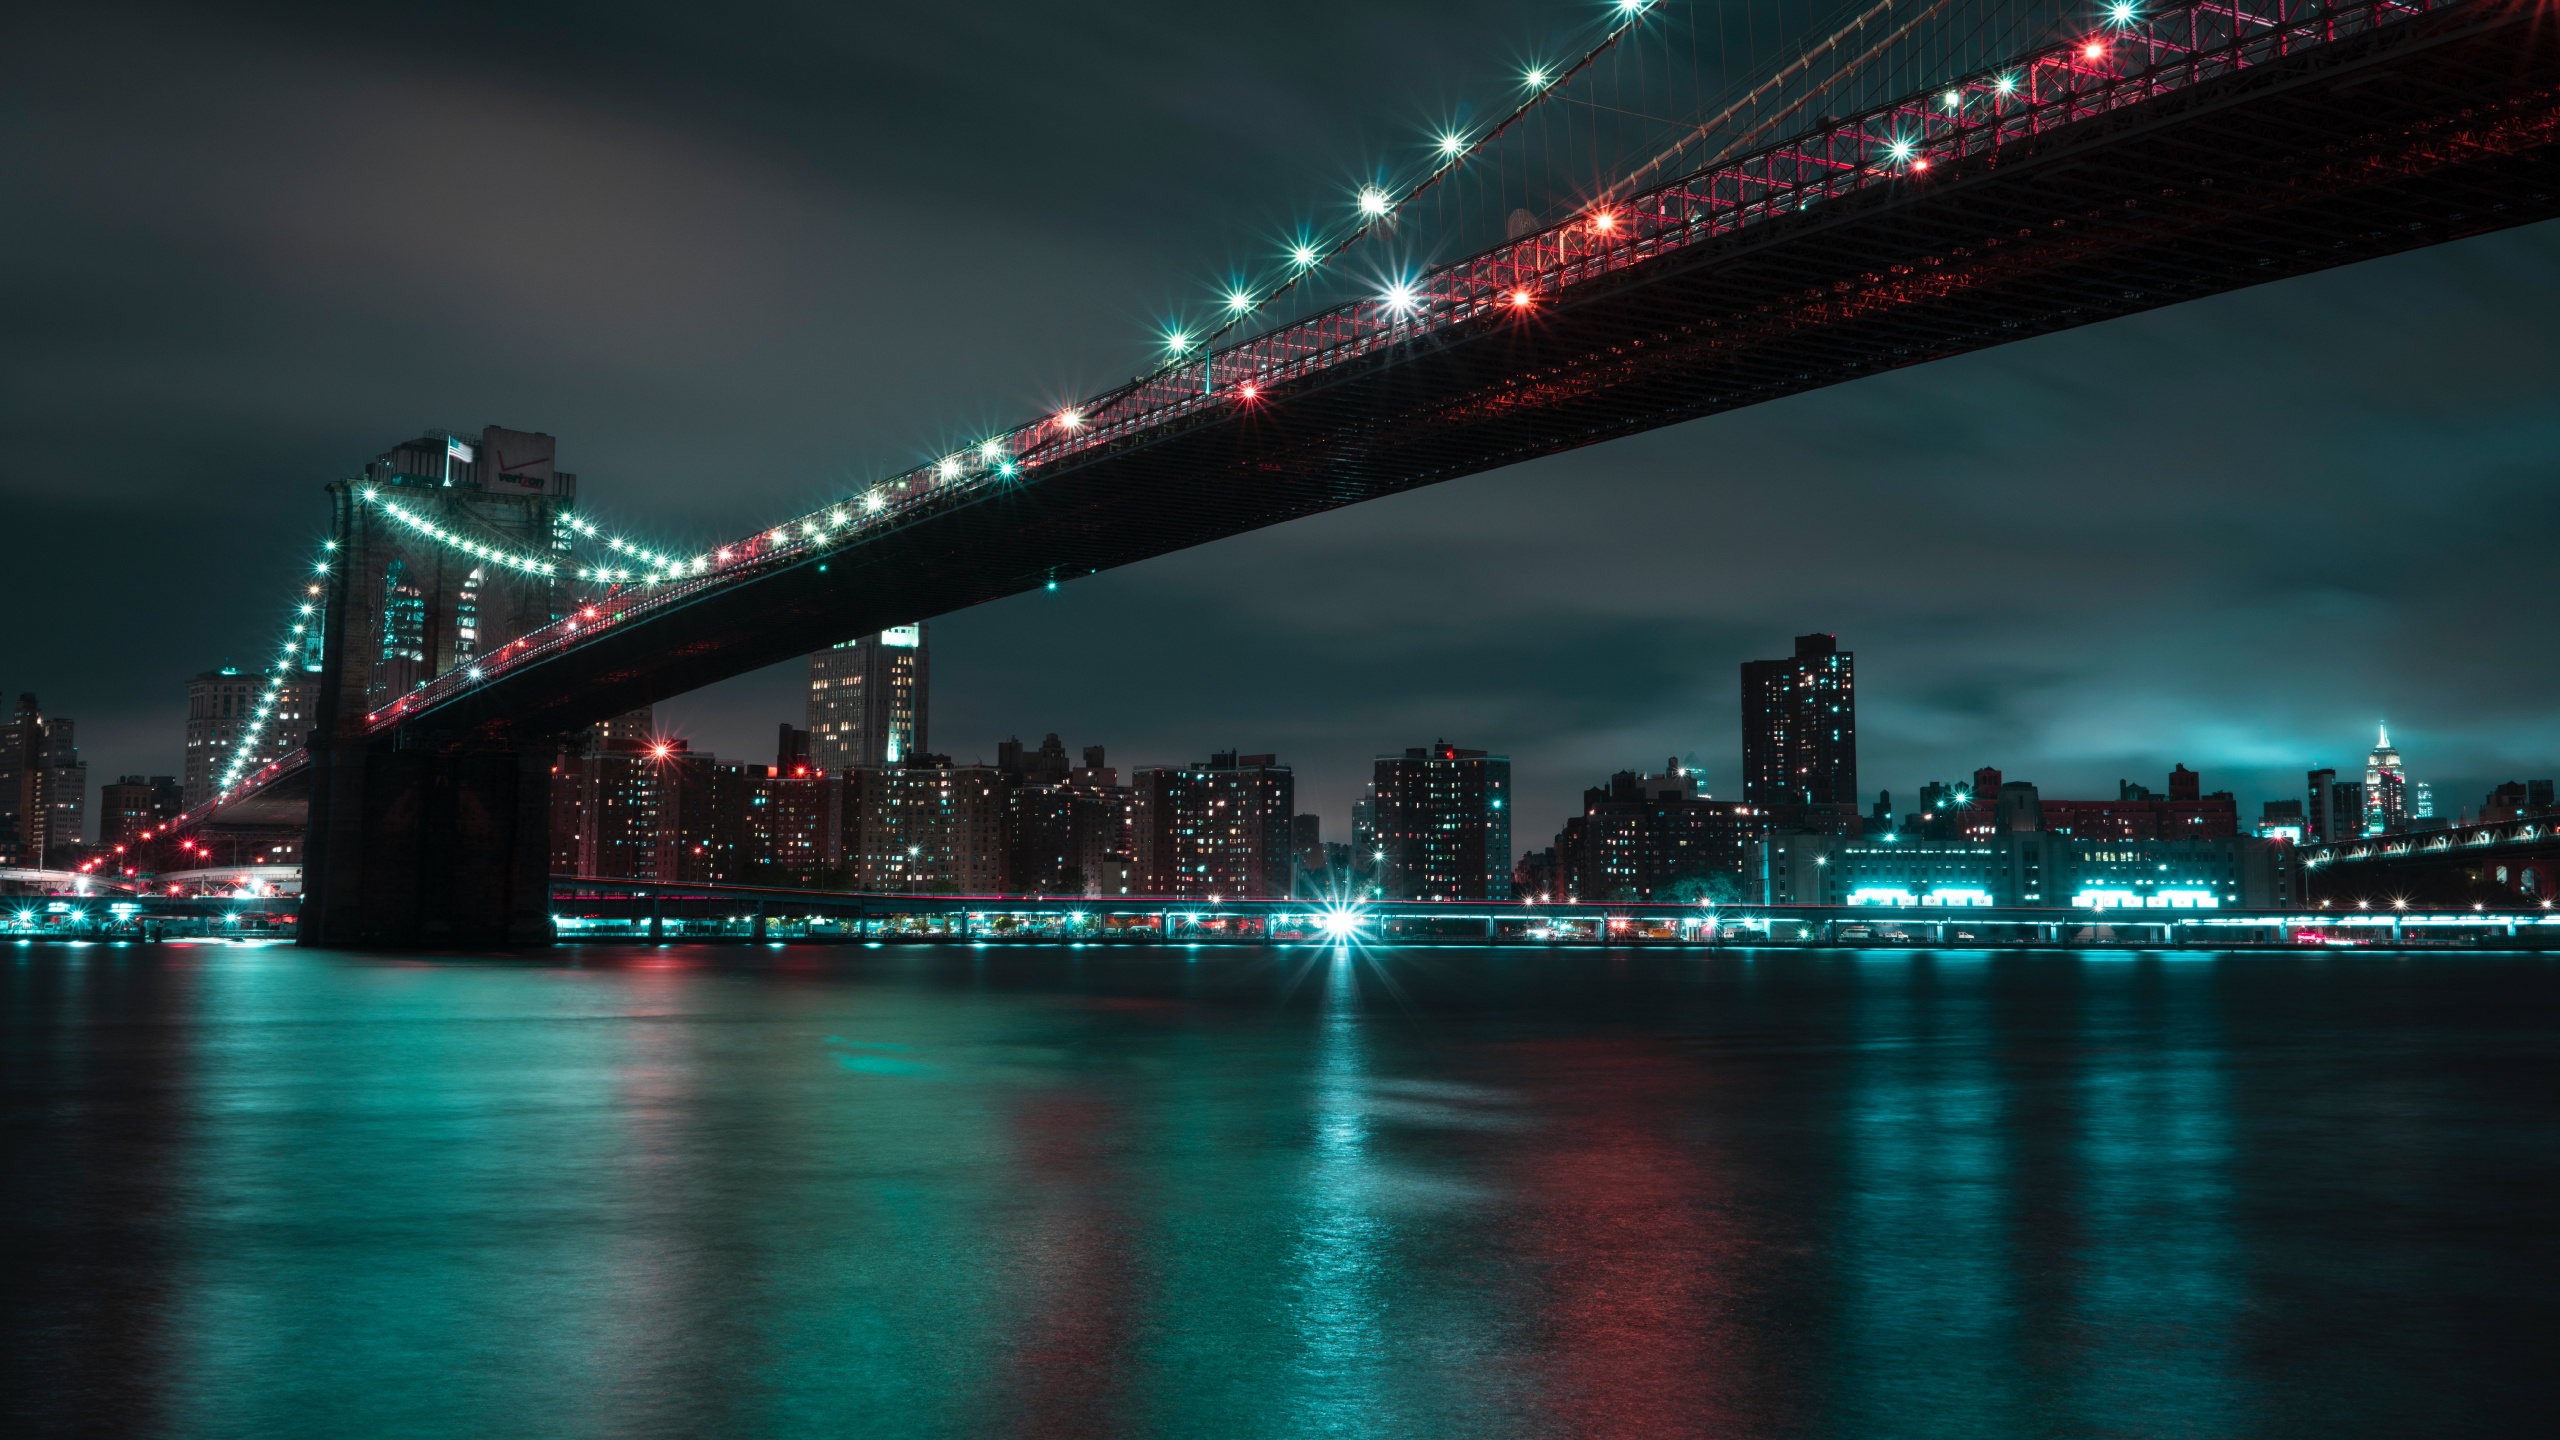 布鲁克林大桥, 城市景观, 城市, 红色的, 里程碑 壁纸 2560x1440 允许